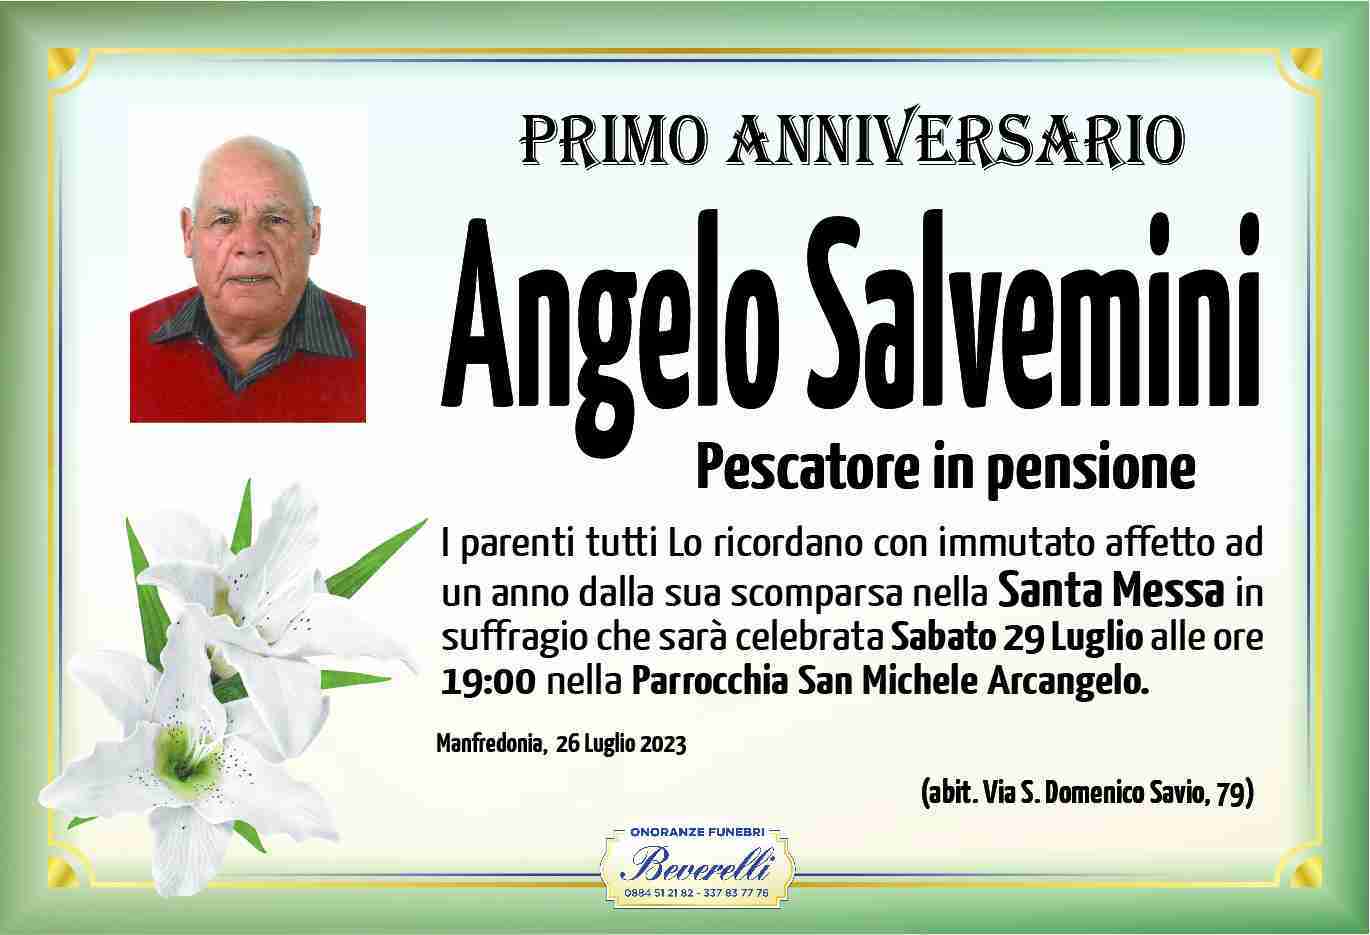 Angelo Salvemini